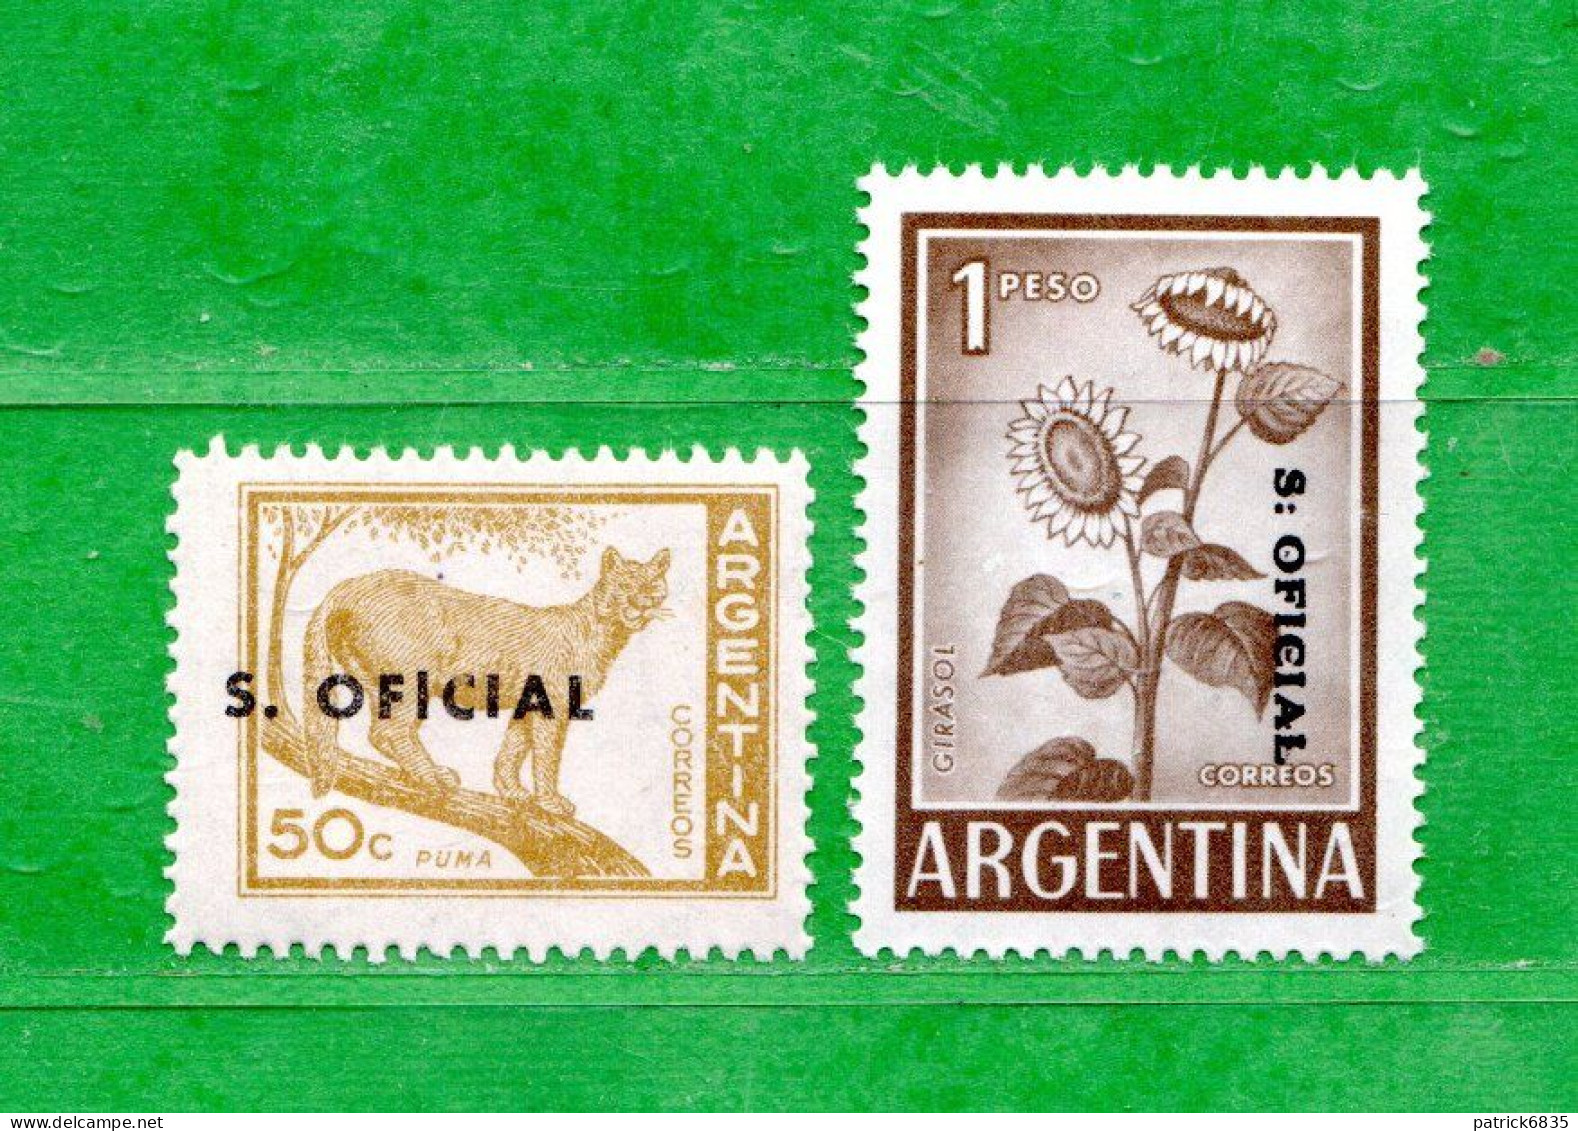 (Mn.1 ) Argentina - ** 1959- S.OFICIAL - PUMA - Tournesol.  Yvert  383-386A.  MNH** - Dienstmarken